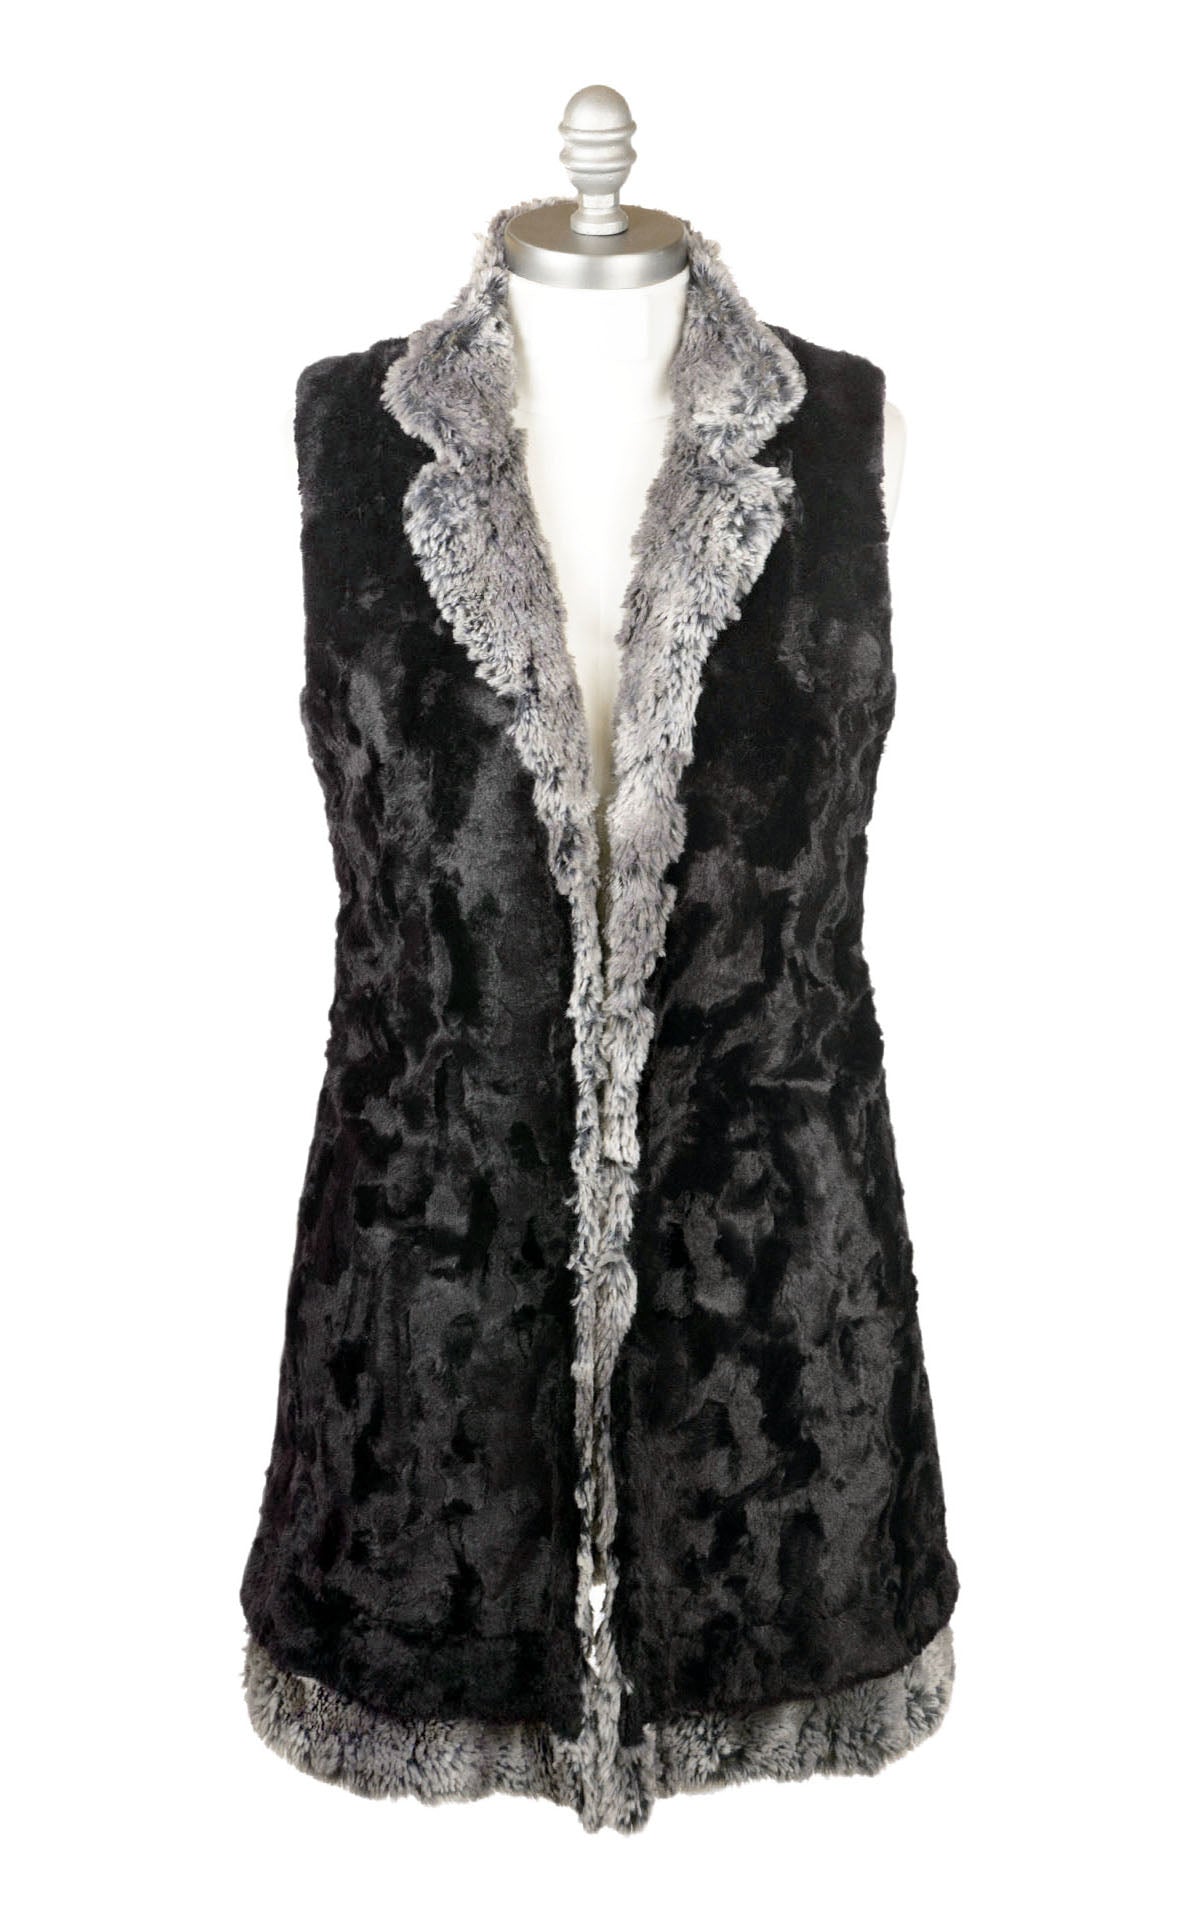 Mandarin Vest | Seattle Sky Luxury Faux Fur lined Black | Handmade in Seattle WA USA by Pandemonium Millinery